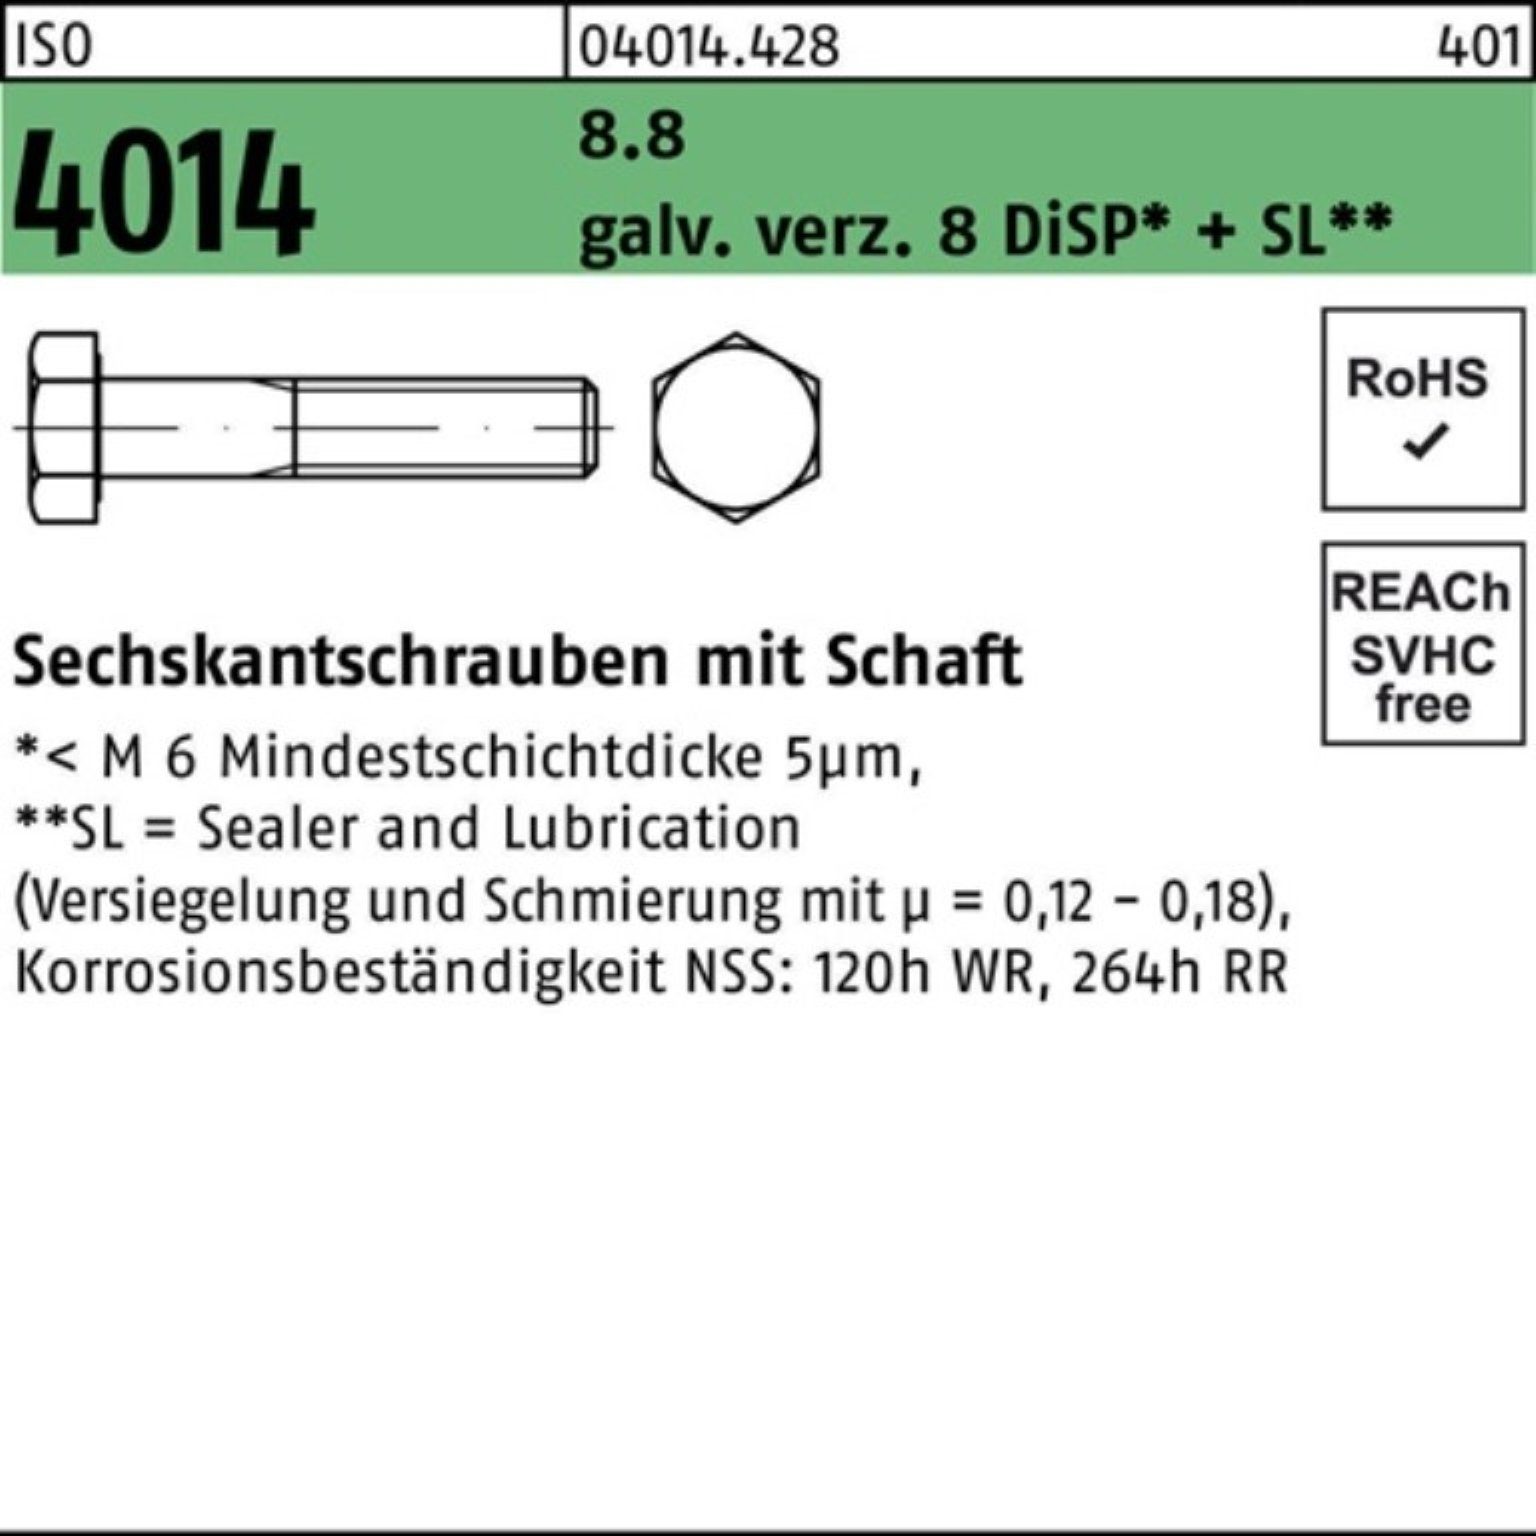 Bufab Sechskantschraube 100er Pack Schaft 8.8 Di Sechskantschraube galv.verz. 8 M6x90 4014 ISO